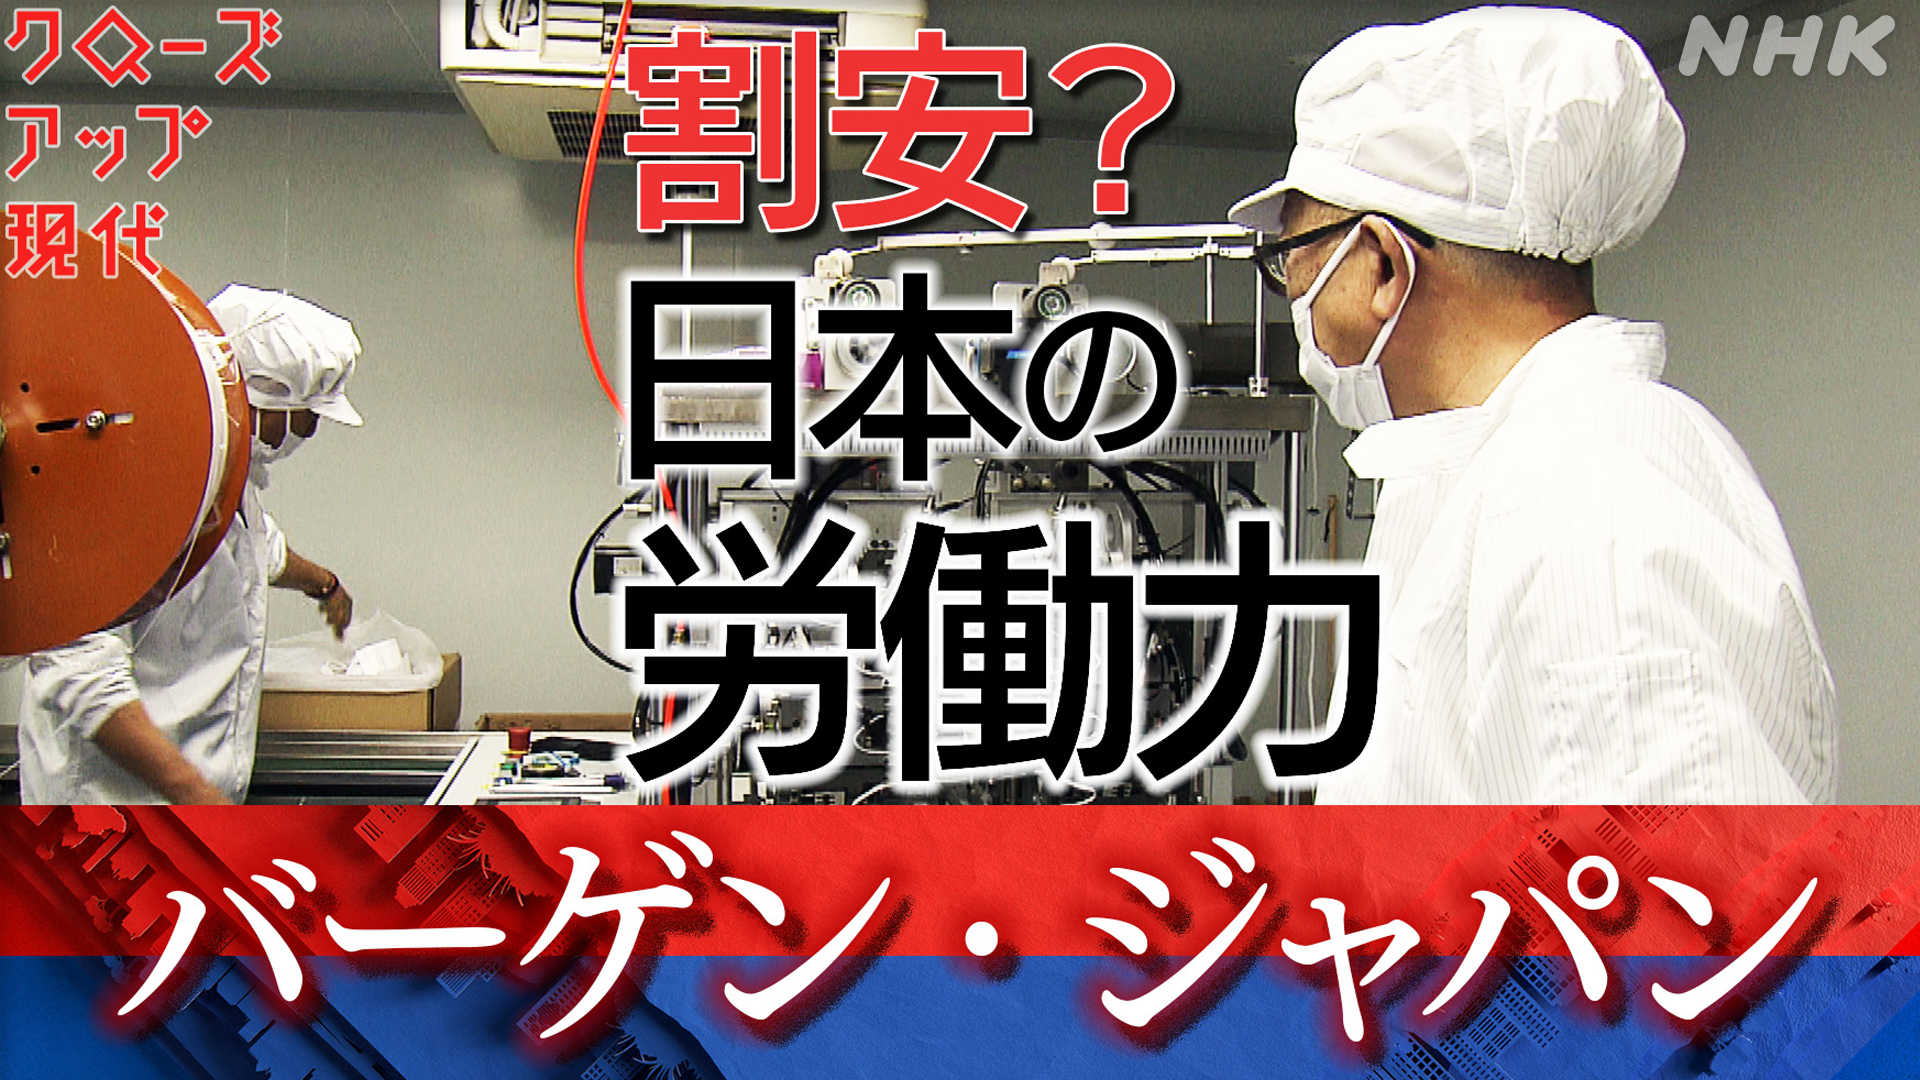 バーゲン・ジャパン 世界に買われる“安い日本”(2)労働力